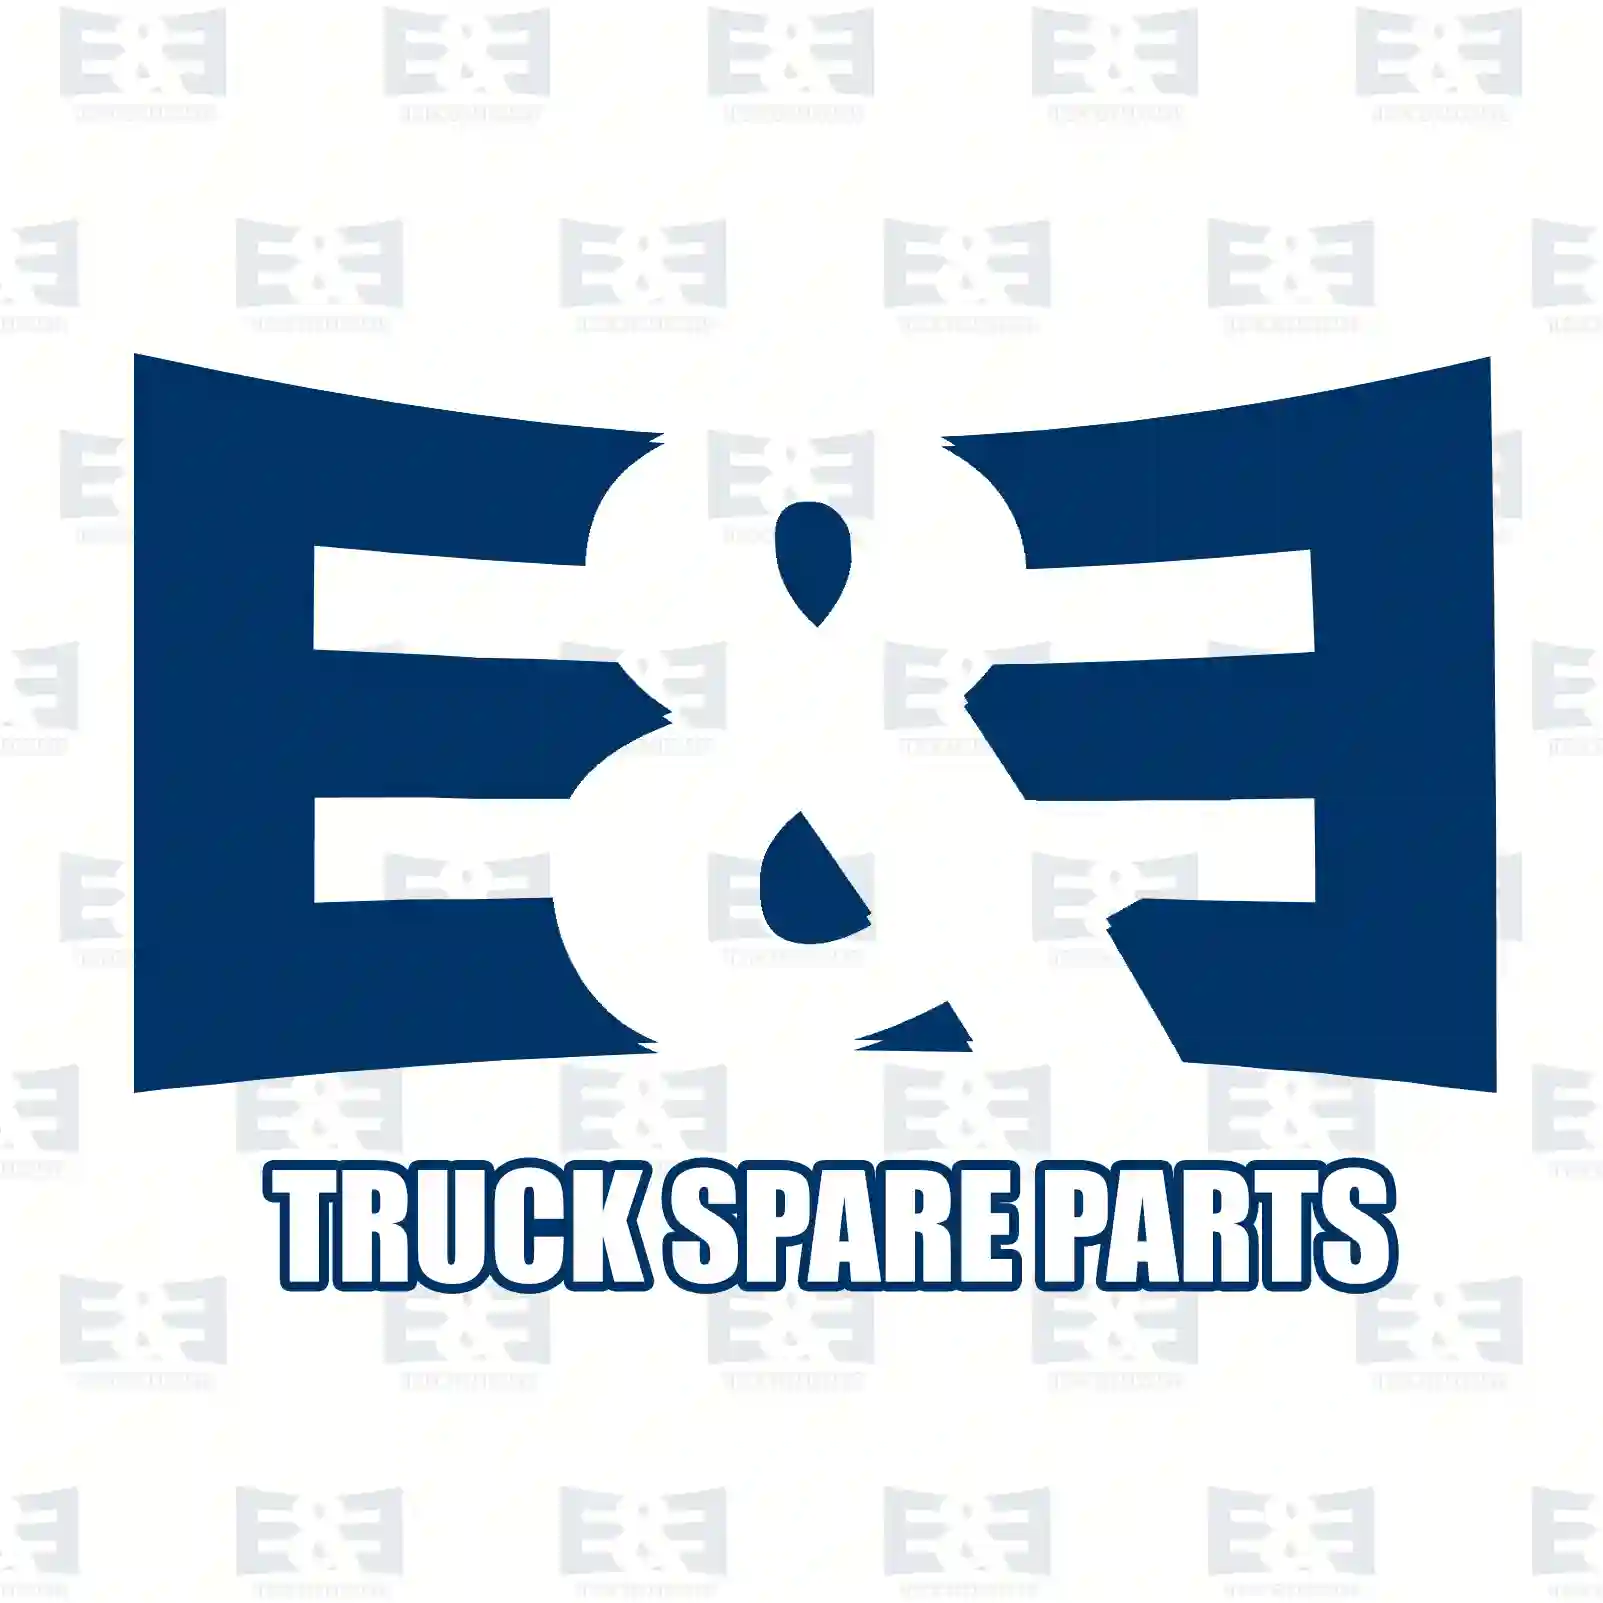 Position lamp, orange, 2E2298260, 5010271807, ZG20689-0008 ||  2E2298260 E&E Truck Spare Parts | Truck Spare Parts, Auotomotive Spare Parts Position lamp, orange, 2E2298260, 5010271807, ZG20689-0008 ||  2E2298260 E&E Truck Spare Parts | Truck Spare Parts, Auotomotive Spare Parts